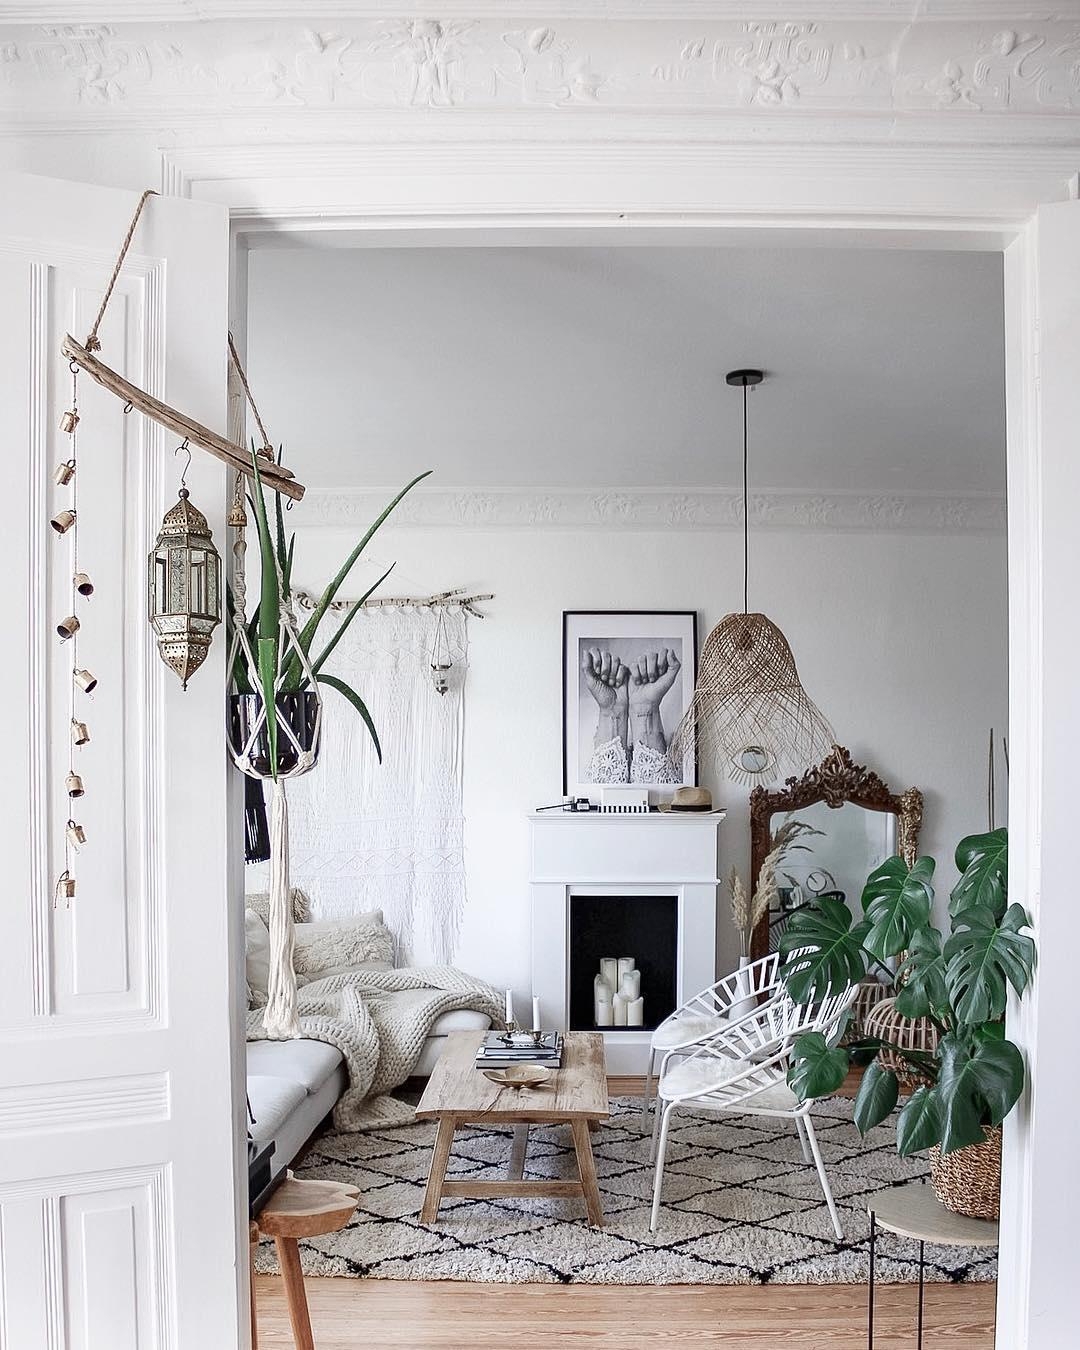 Unser #Boho #Wohnzimmer!

#scandi #nordic #couchstyle #livingroom #interior #cozy #kamin #altbau #altbauliebe #wohnen